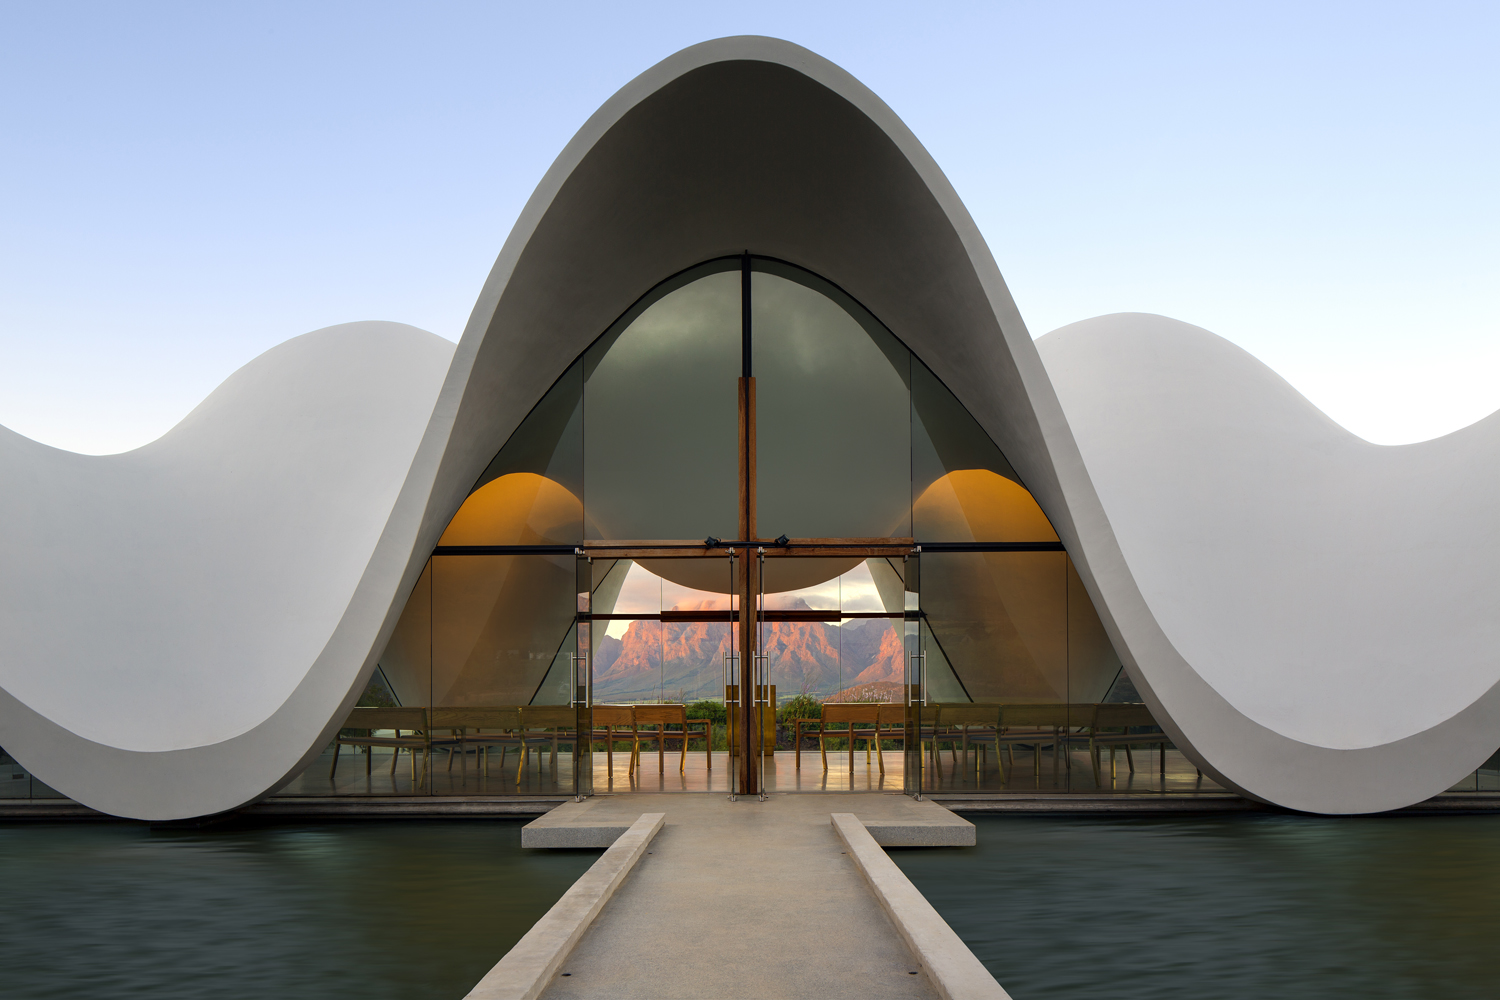 Bosjes Chapel by Steyn Studio, South Africa